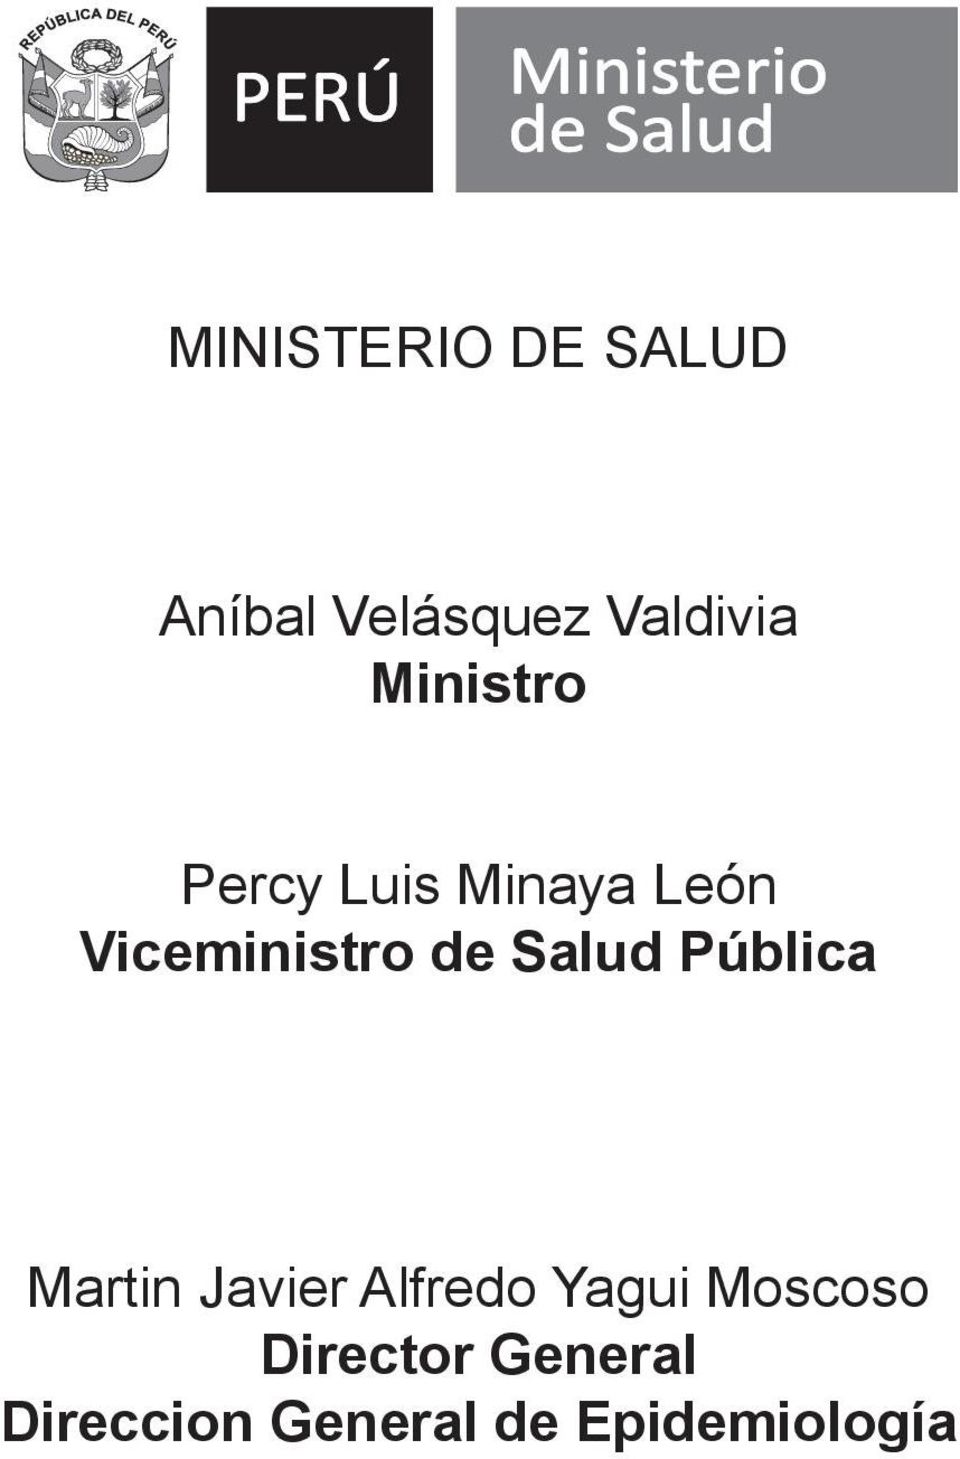 Ministro Percy Luis Minaya León Viceministro de Salud